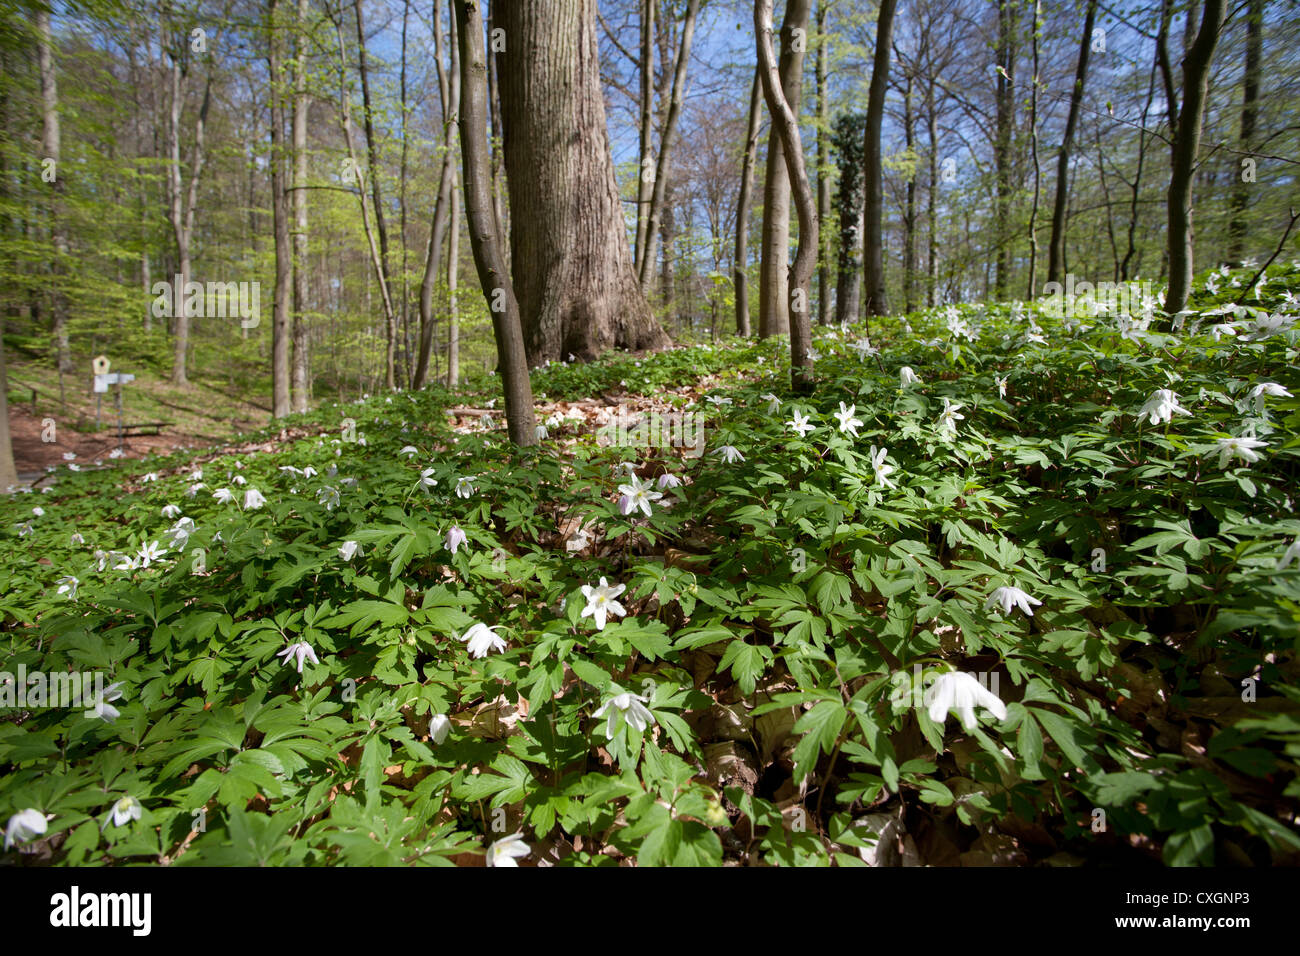 Wood Anemones, Anemone nemorosa, Beech Forest, Feldberg, Feldberger Seenlandschaft, Mecklenburgische Seenplatte, Germany Stock Photo